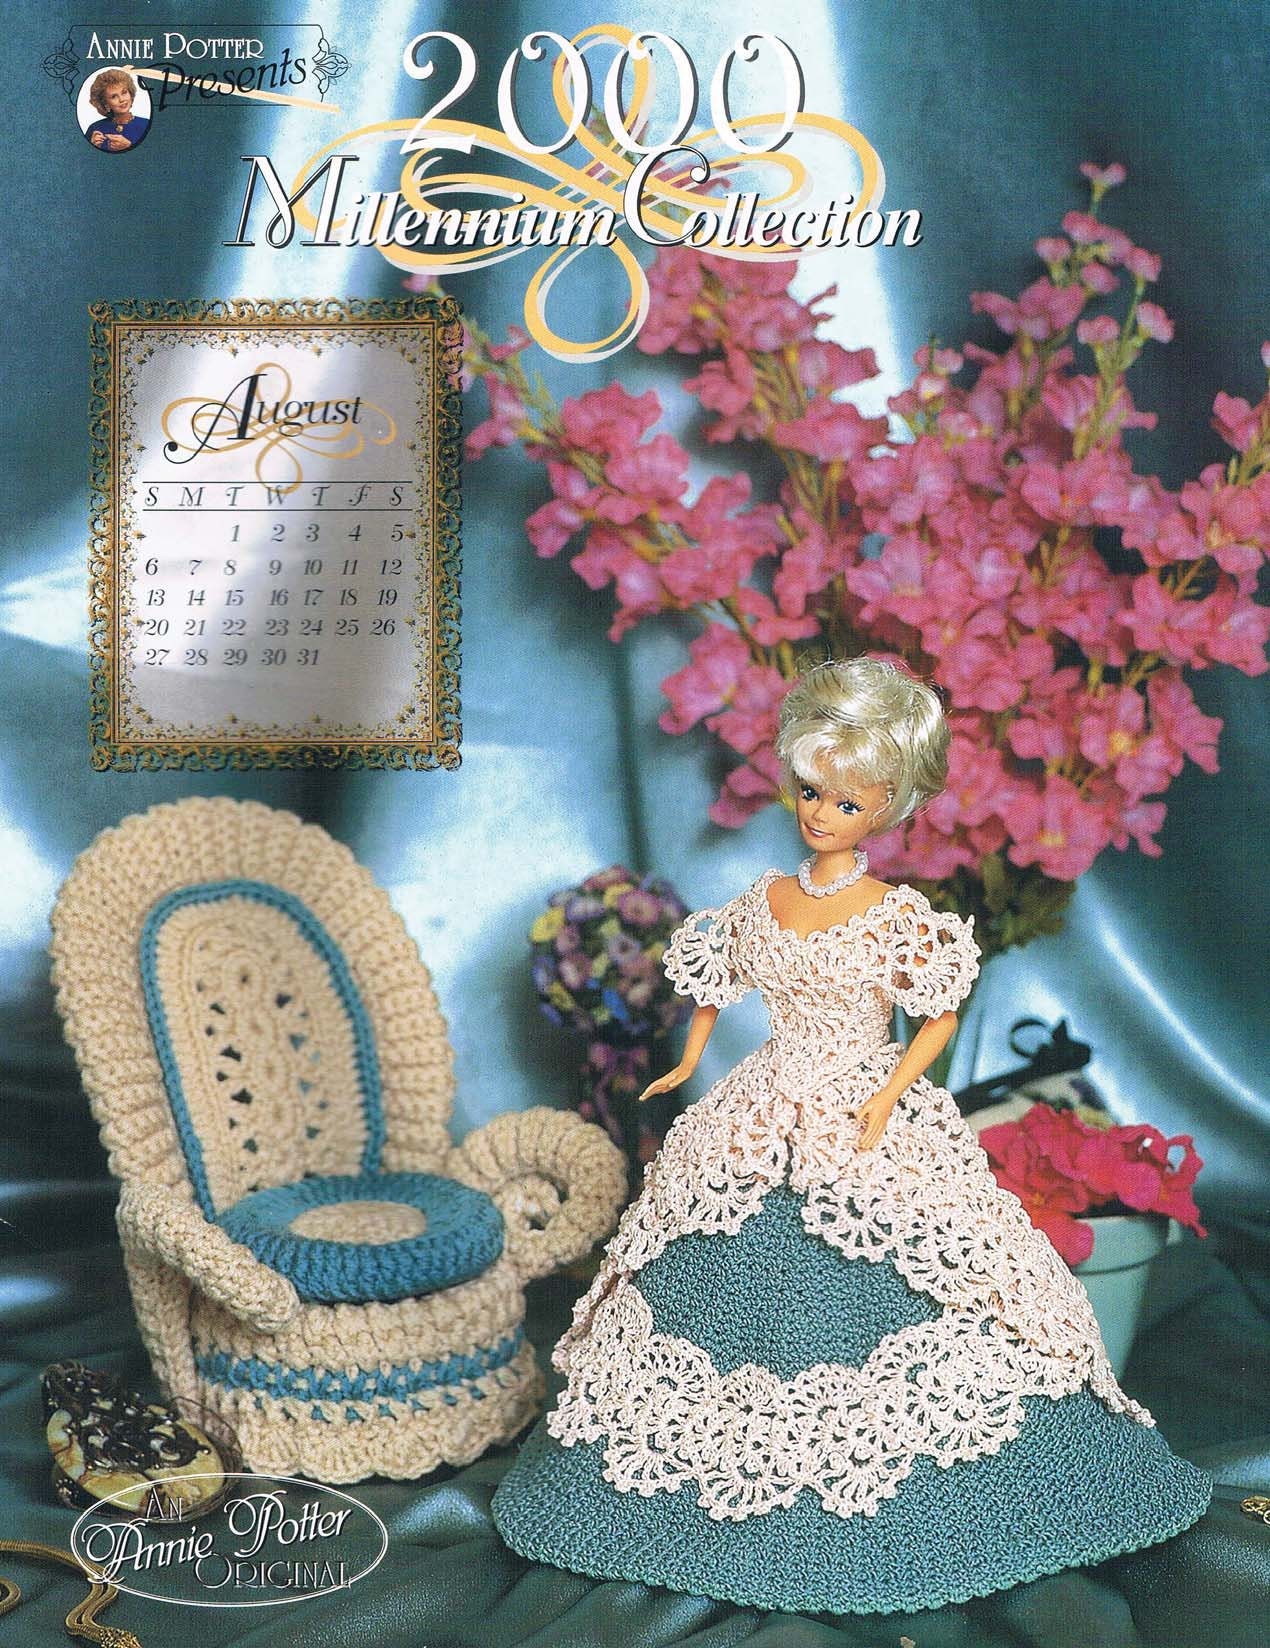 Amigurumi Crochet Pattern, Movable Head Doll Crochet Pattern 